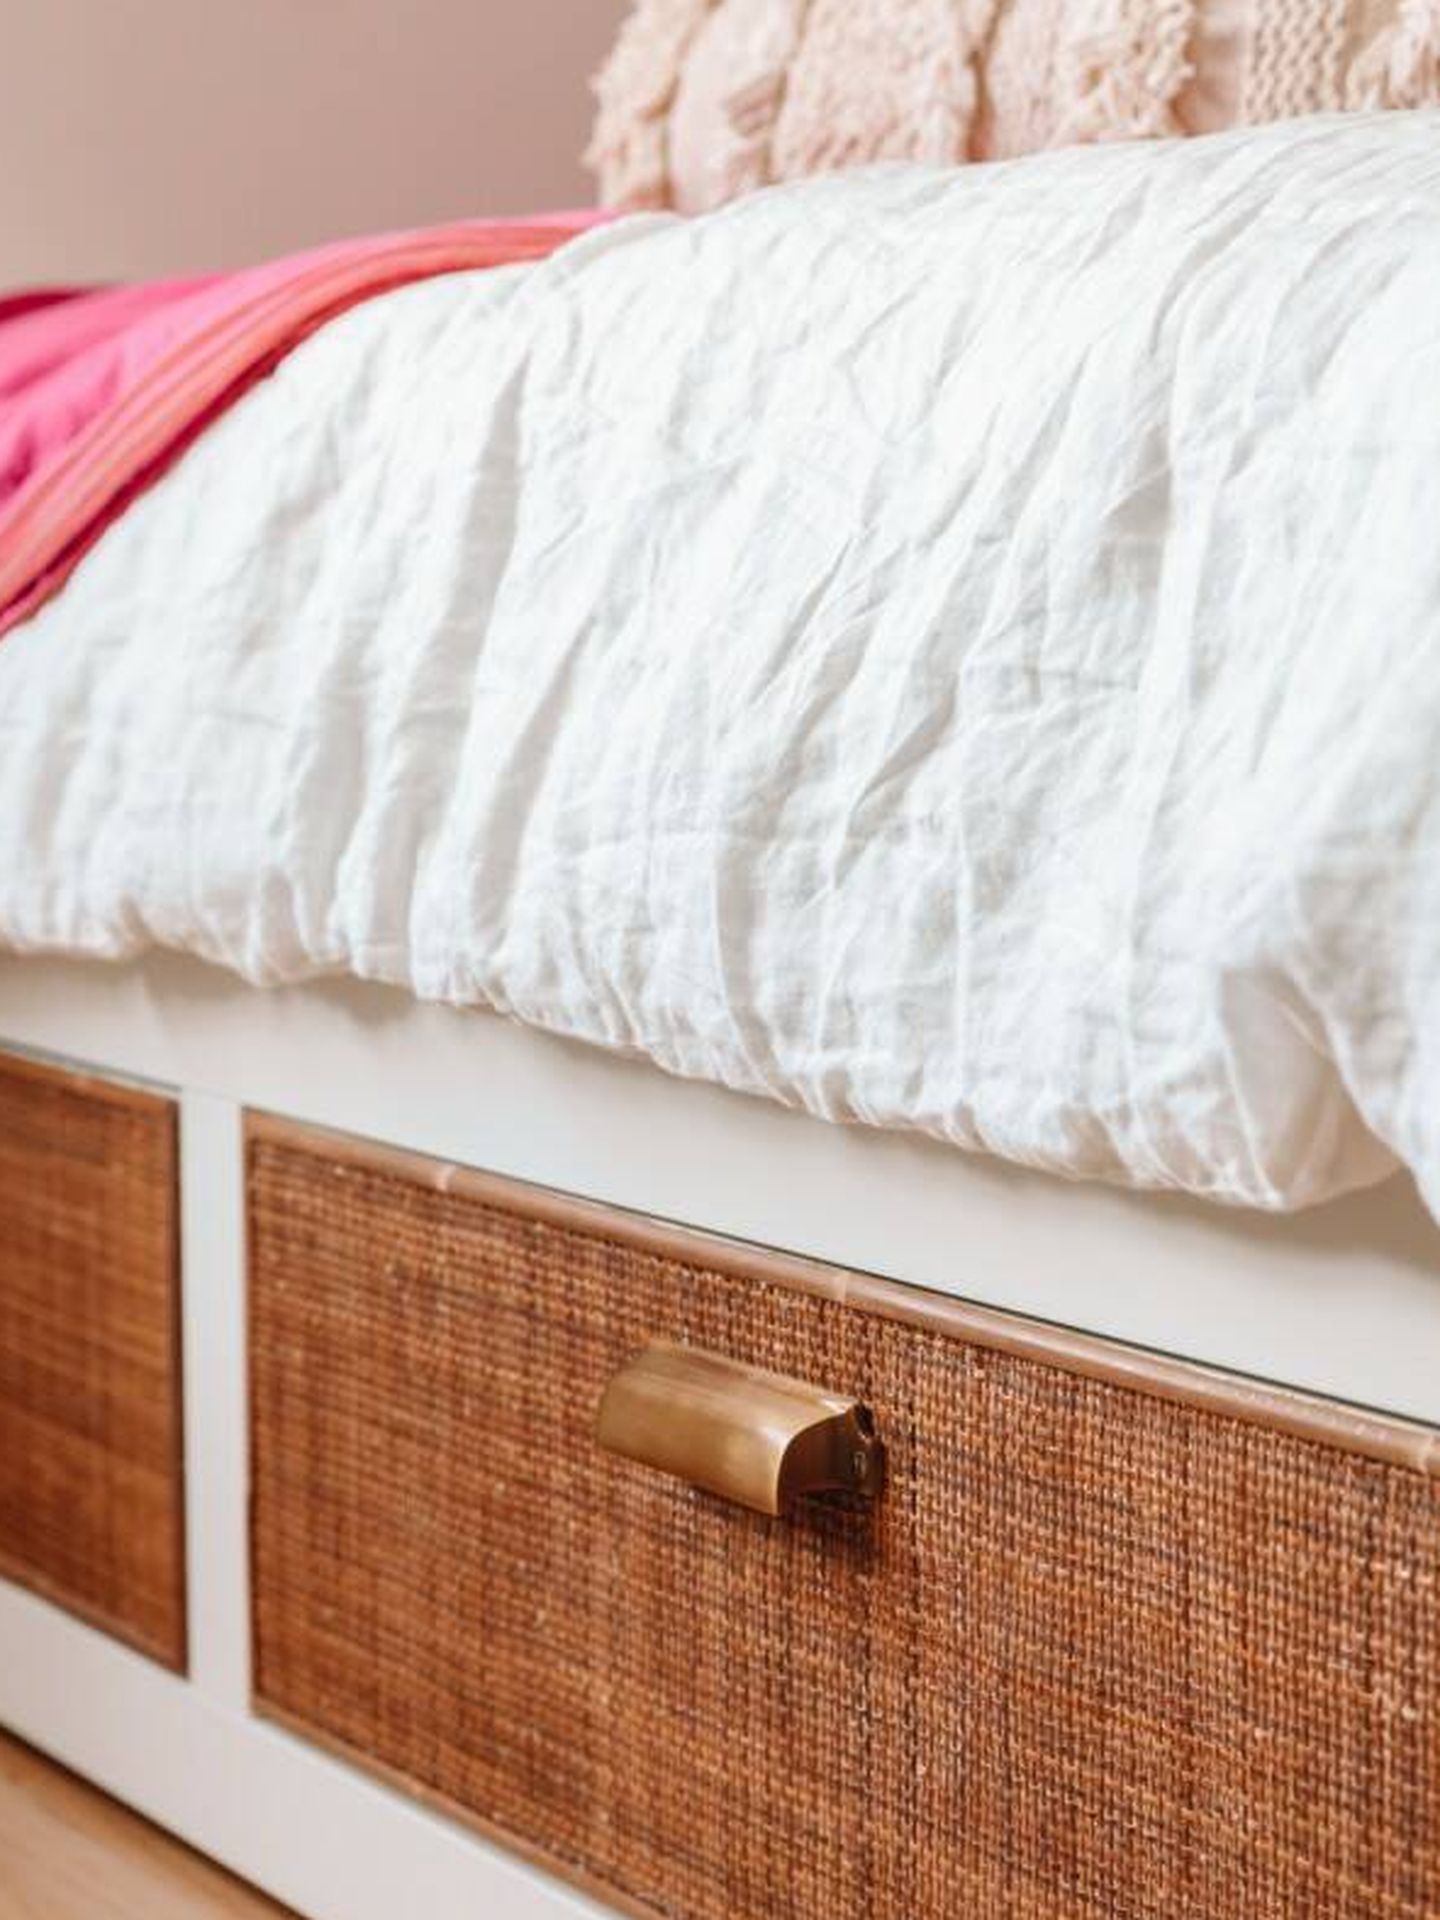 Personaliza y diferencia tu cama Ikea Brimnes. (Studio DIY)